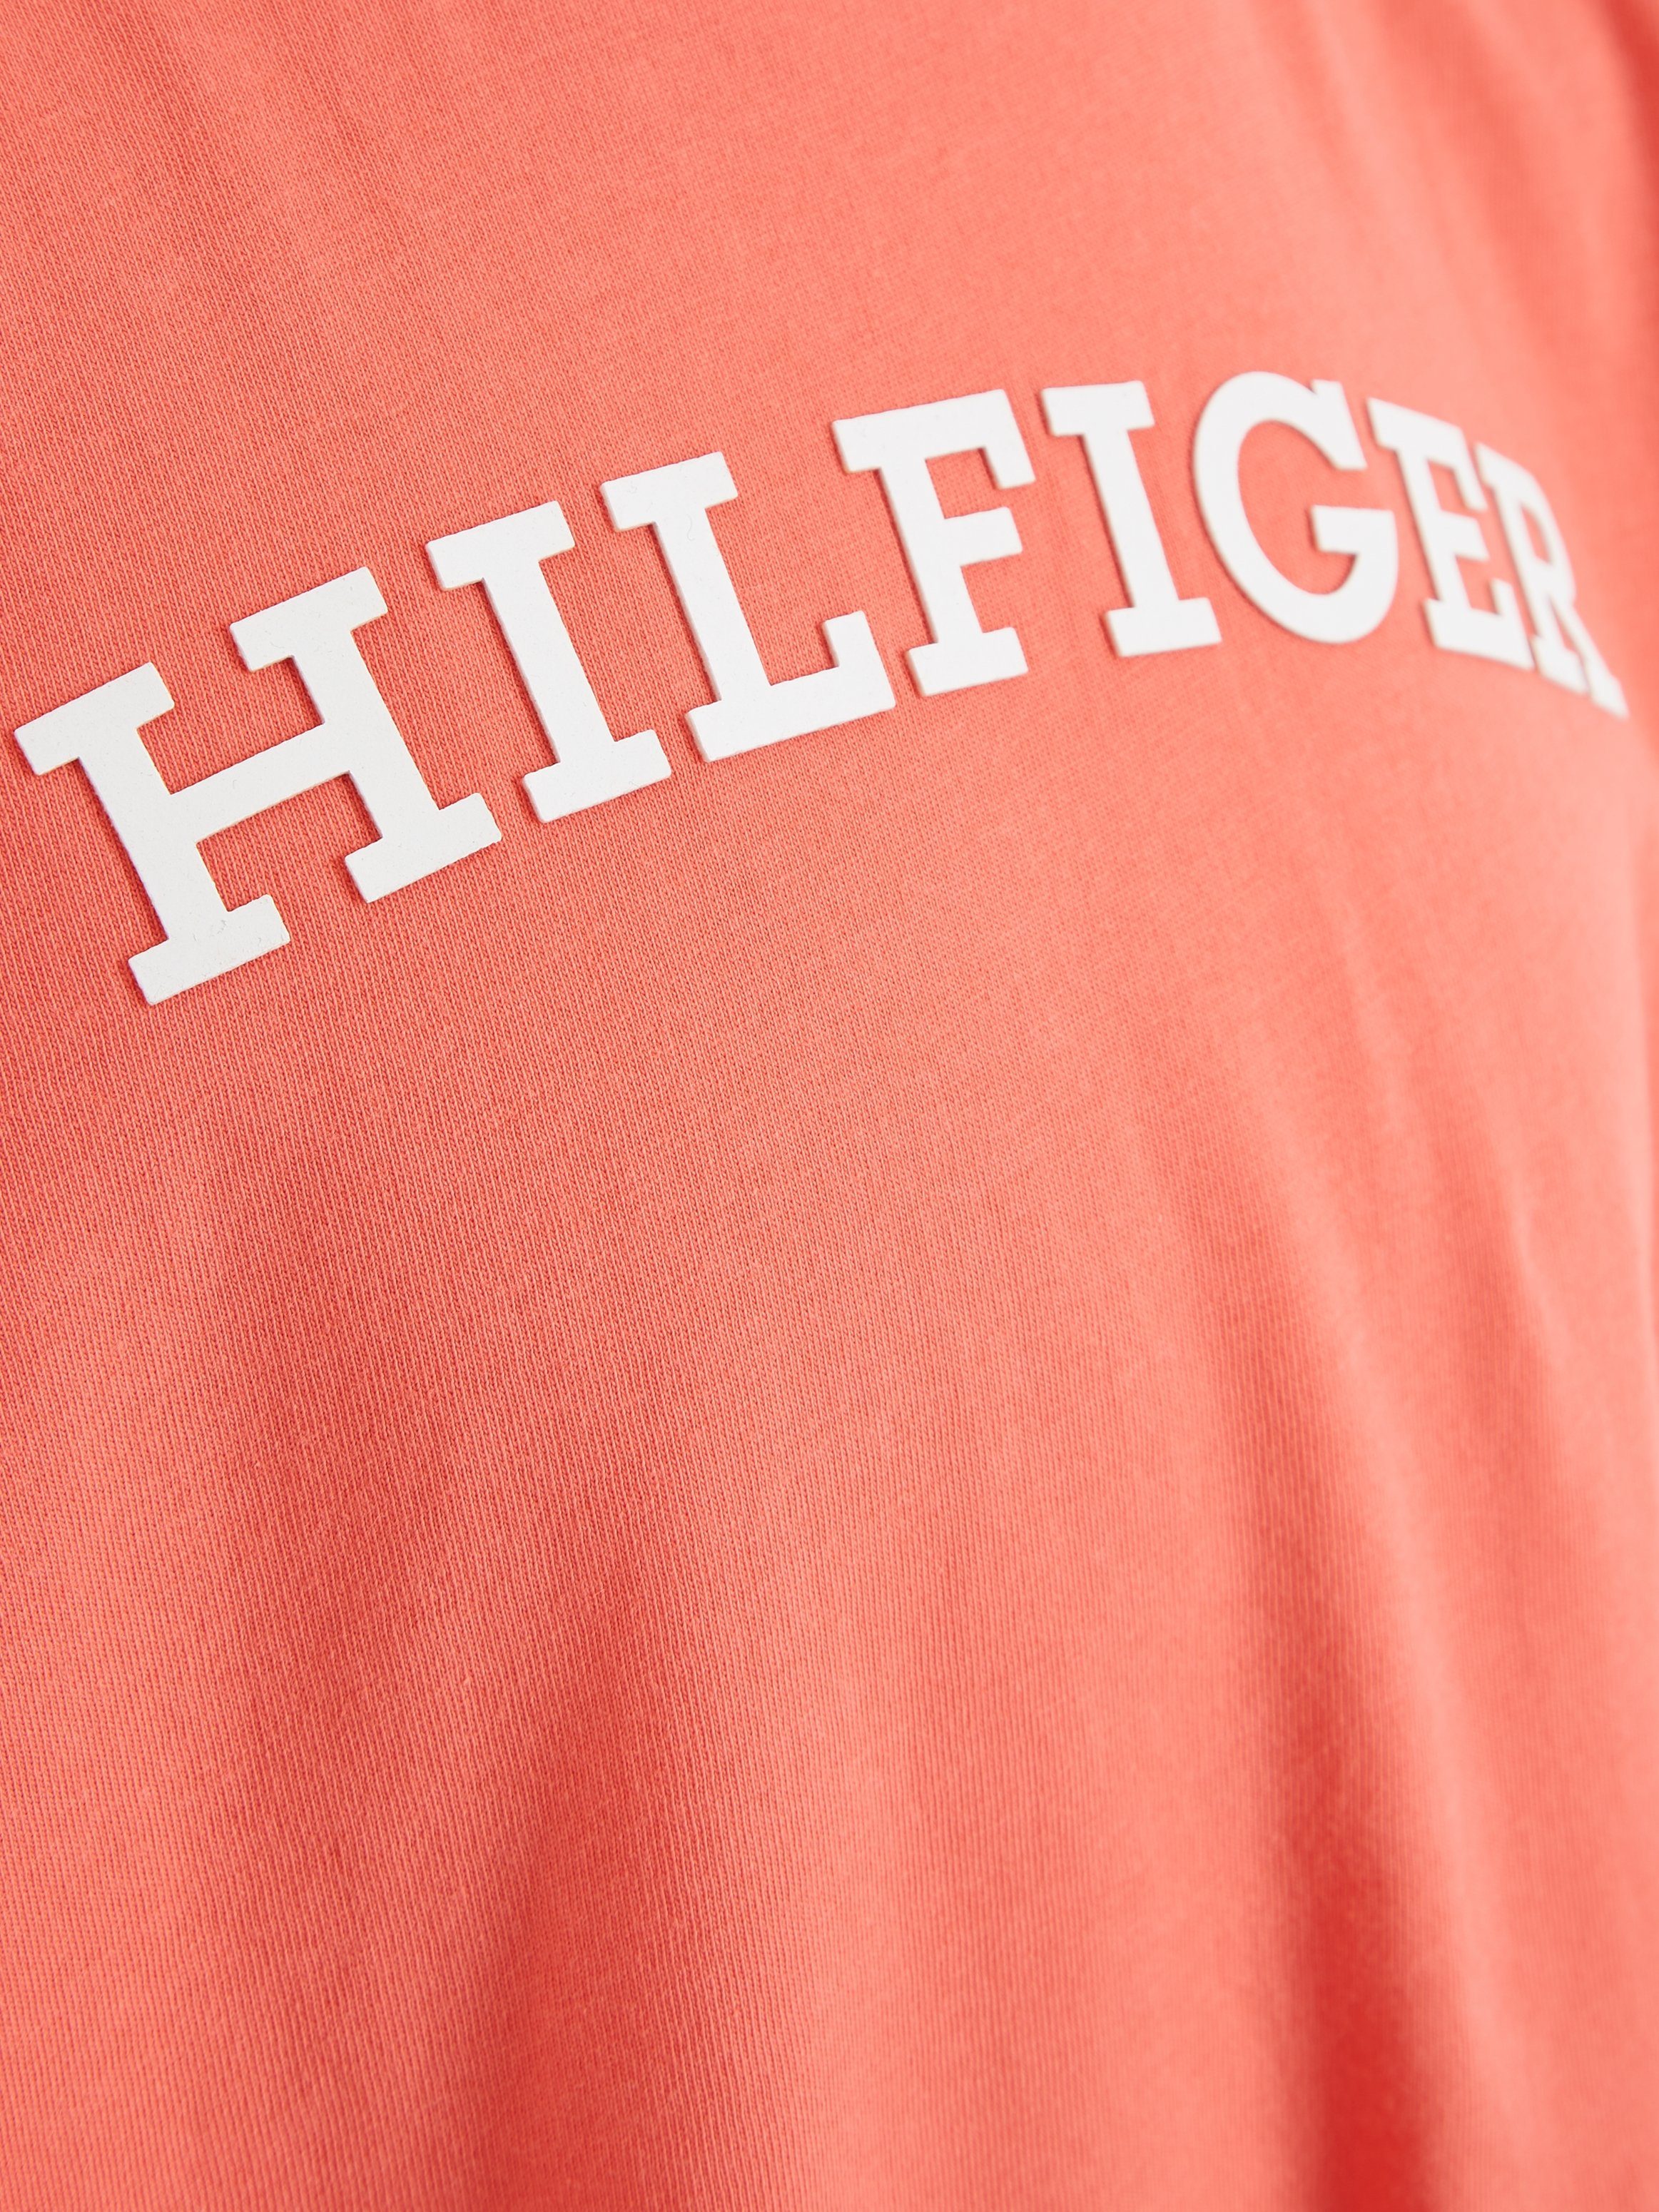 Tommy Hilfiger MONOTYPE modischem koralle Hilfiger-Logoschriftzug S/S der Brust T-Shirt TEE auf mit